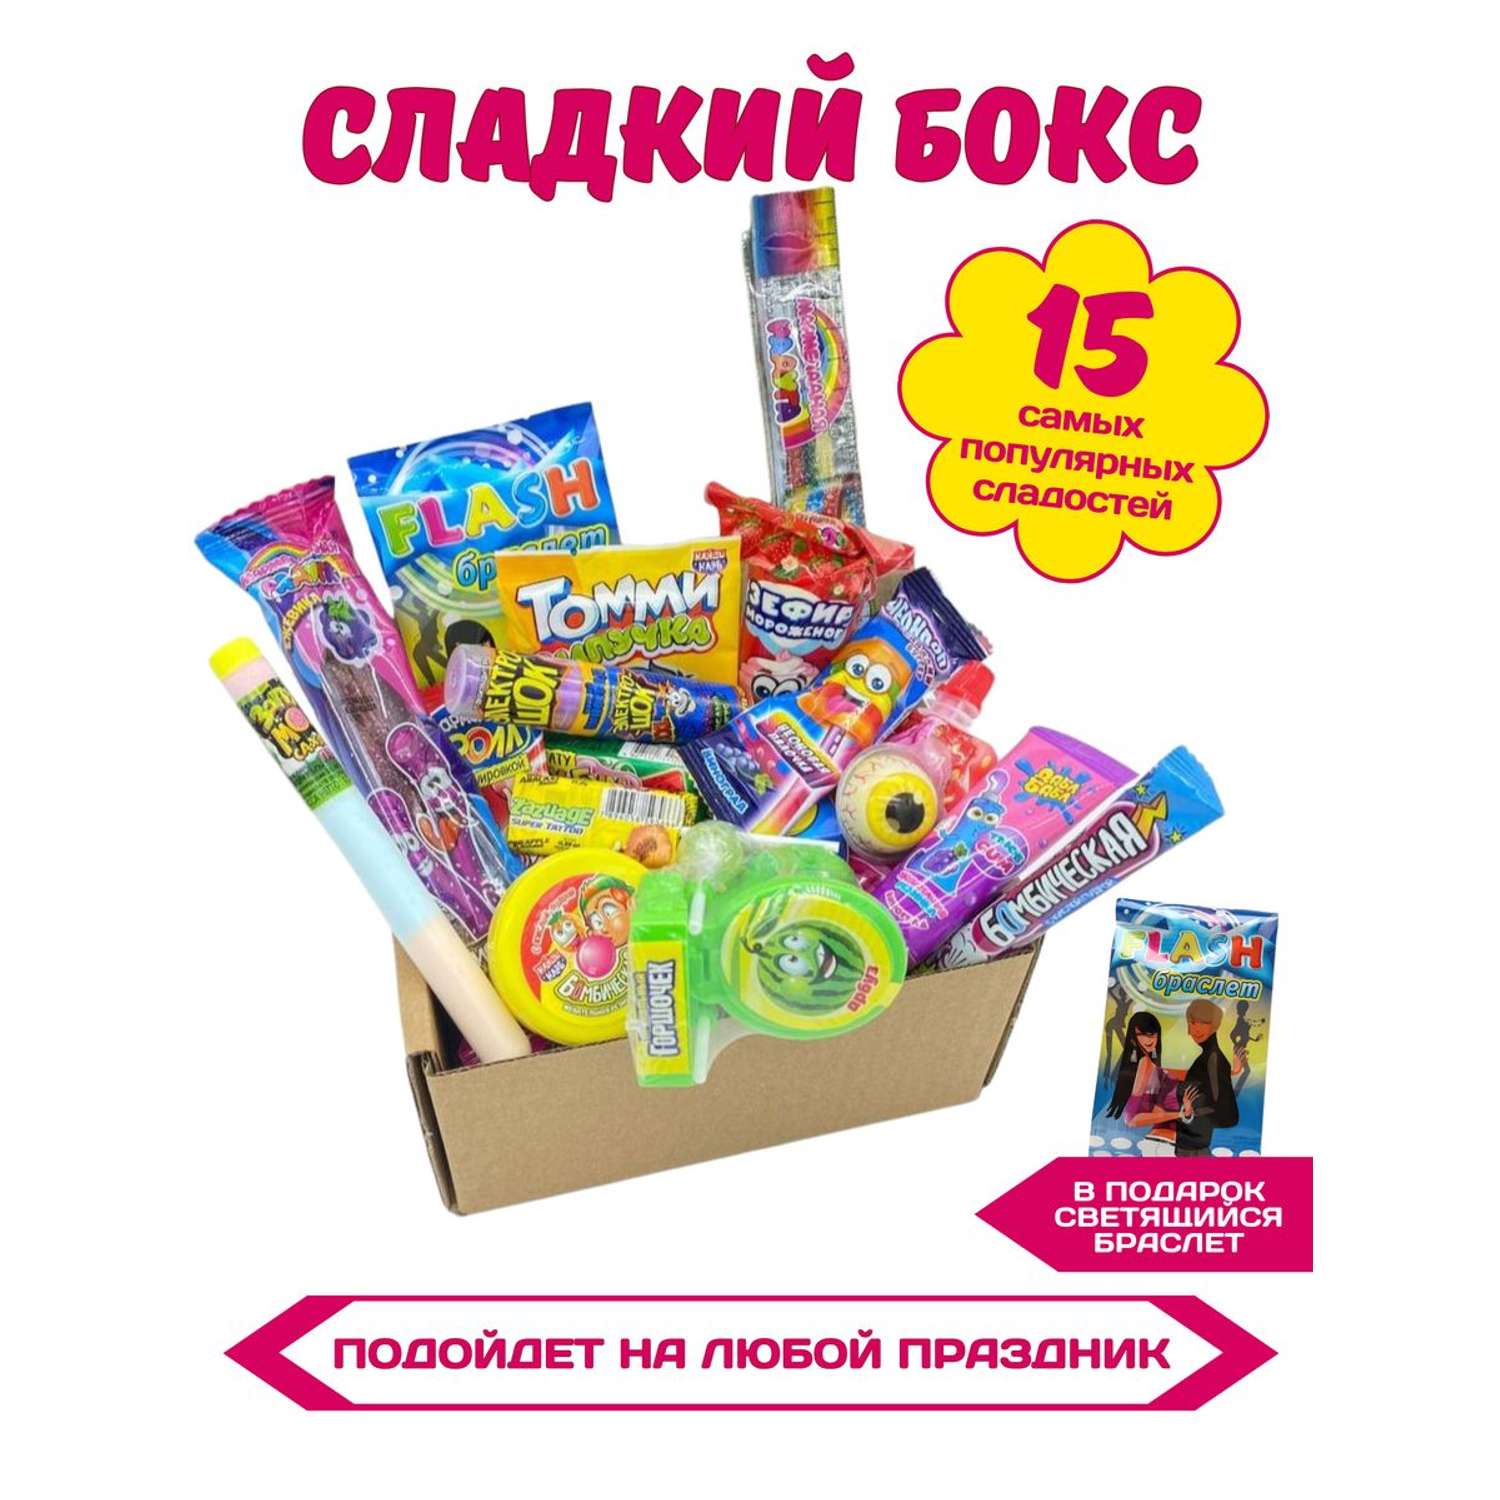 Сладкий набор VKUSNODAY подарочный 15 конфет - фото 1